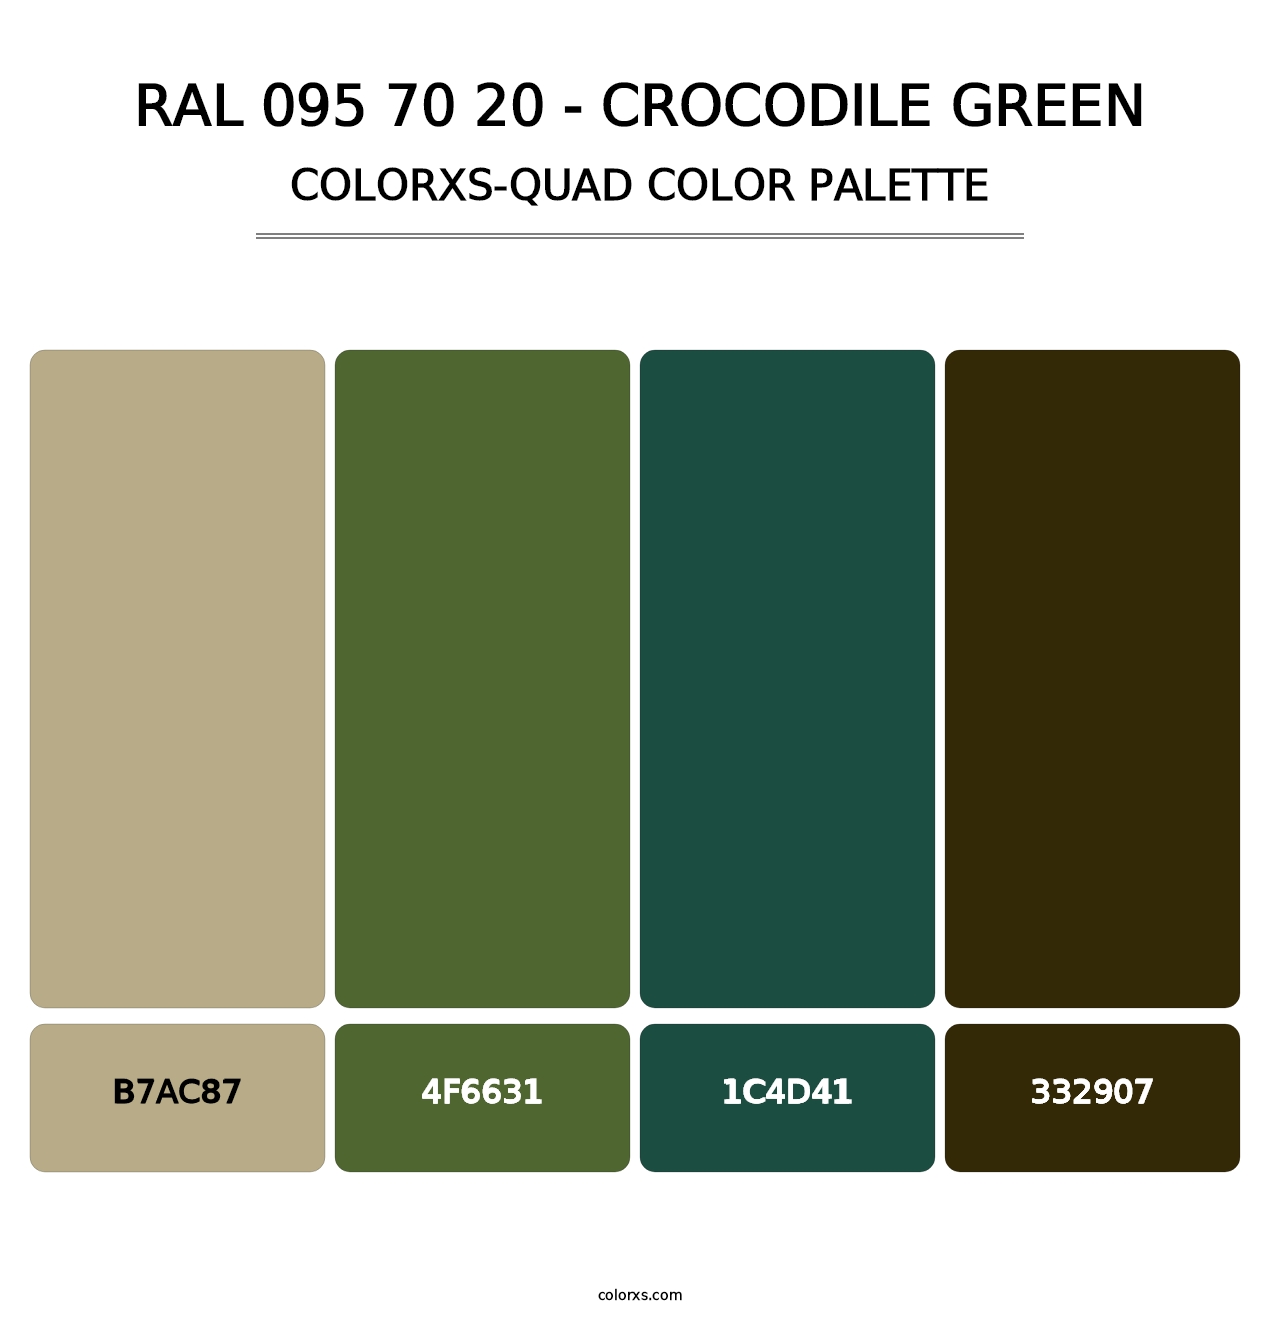 RAL 095 70 20 - Crocodile Green - Colorxs Quad Palette